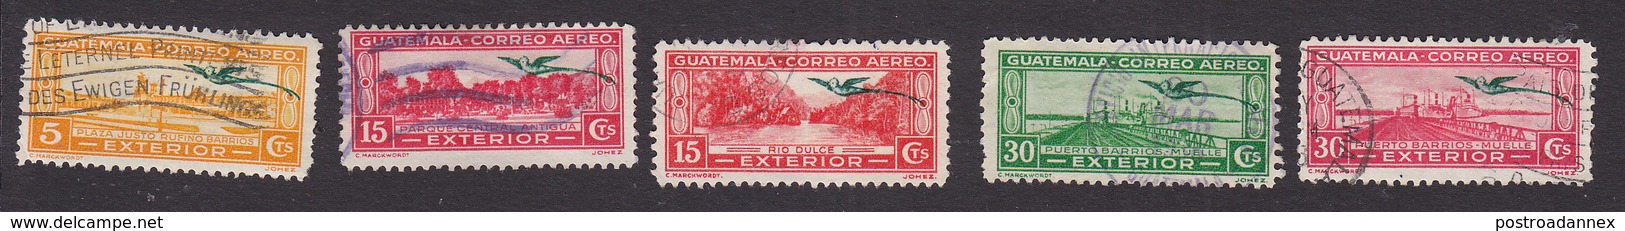 Guatemala, Scott #C53, C56-C57, C62-C63, Used, Scenes Of Guatemala, Issued 1935 - Guatemala